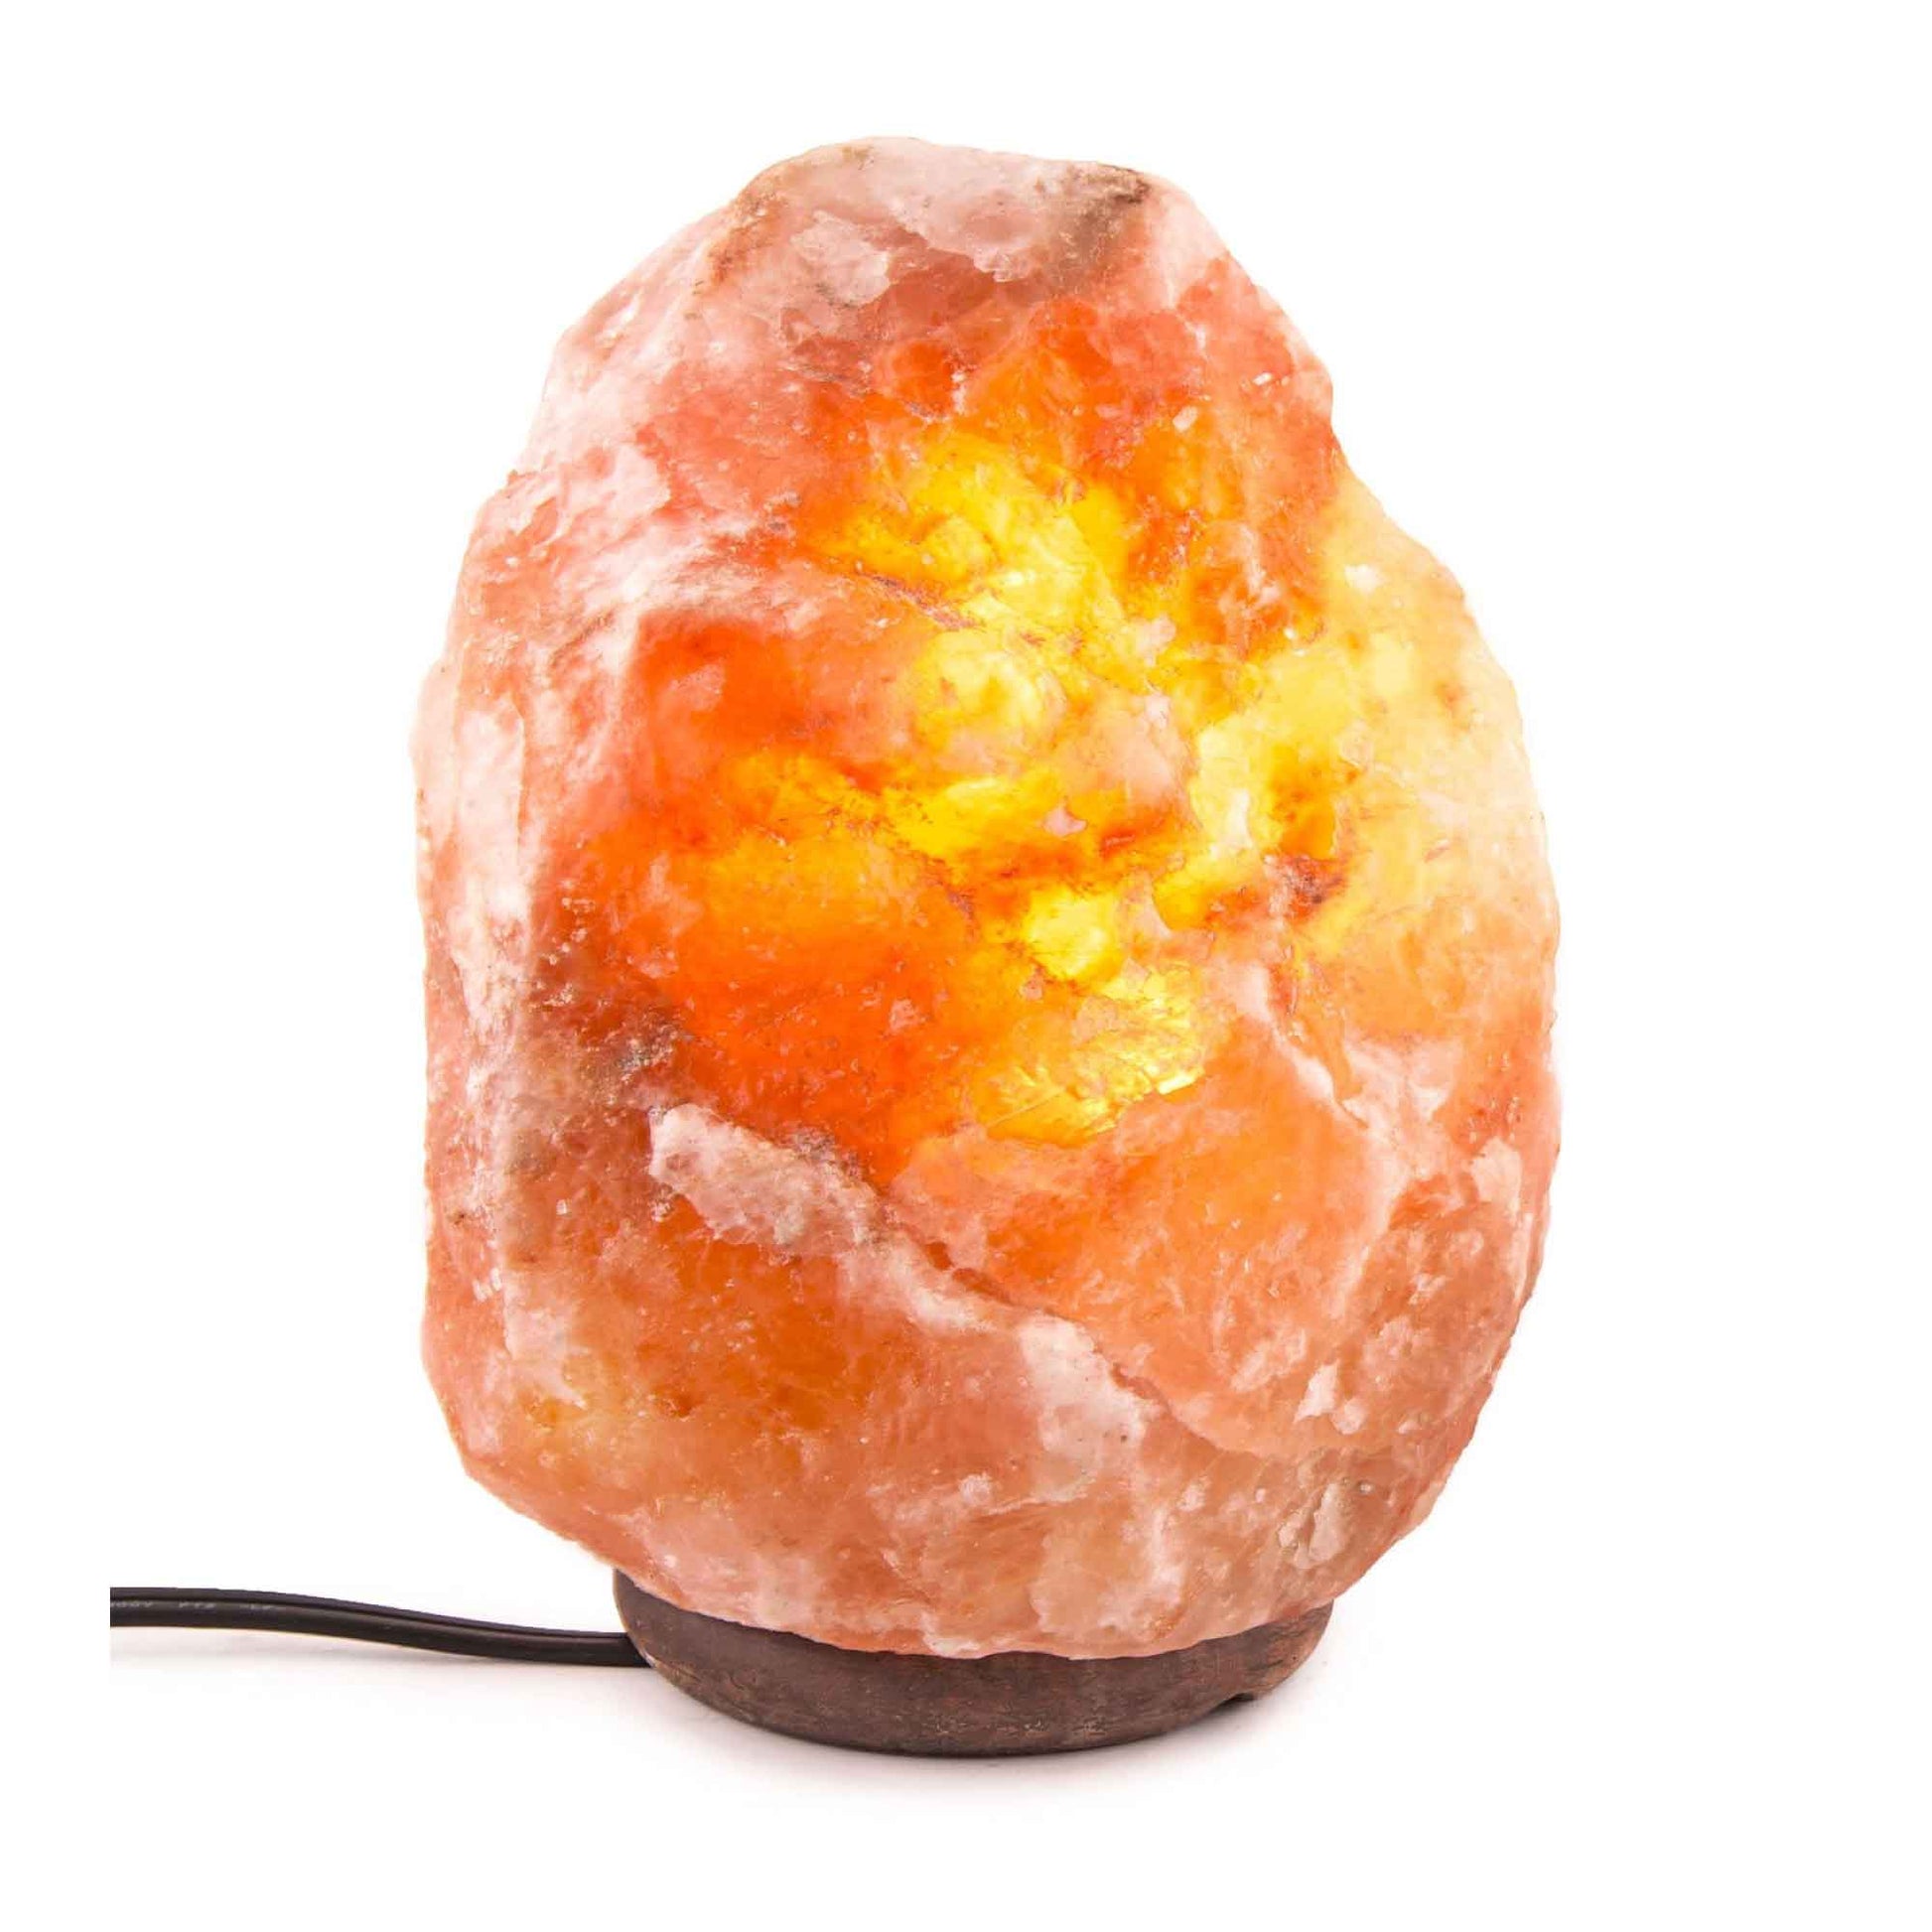 Himalayan Pink Salt Lamp + 12W 12V Switch - Carved Shape Natural Crystal Rock